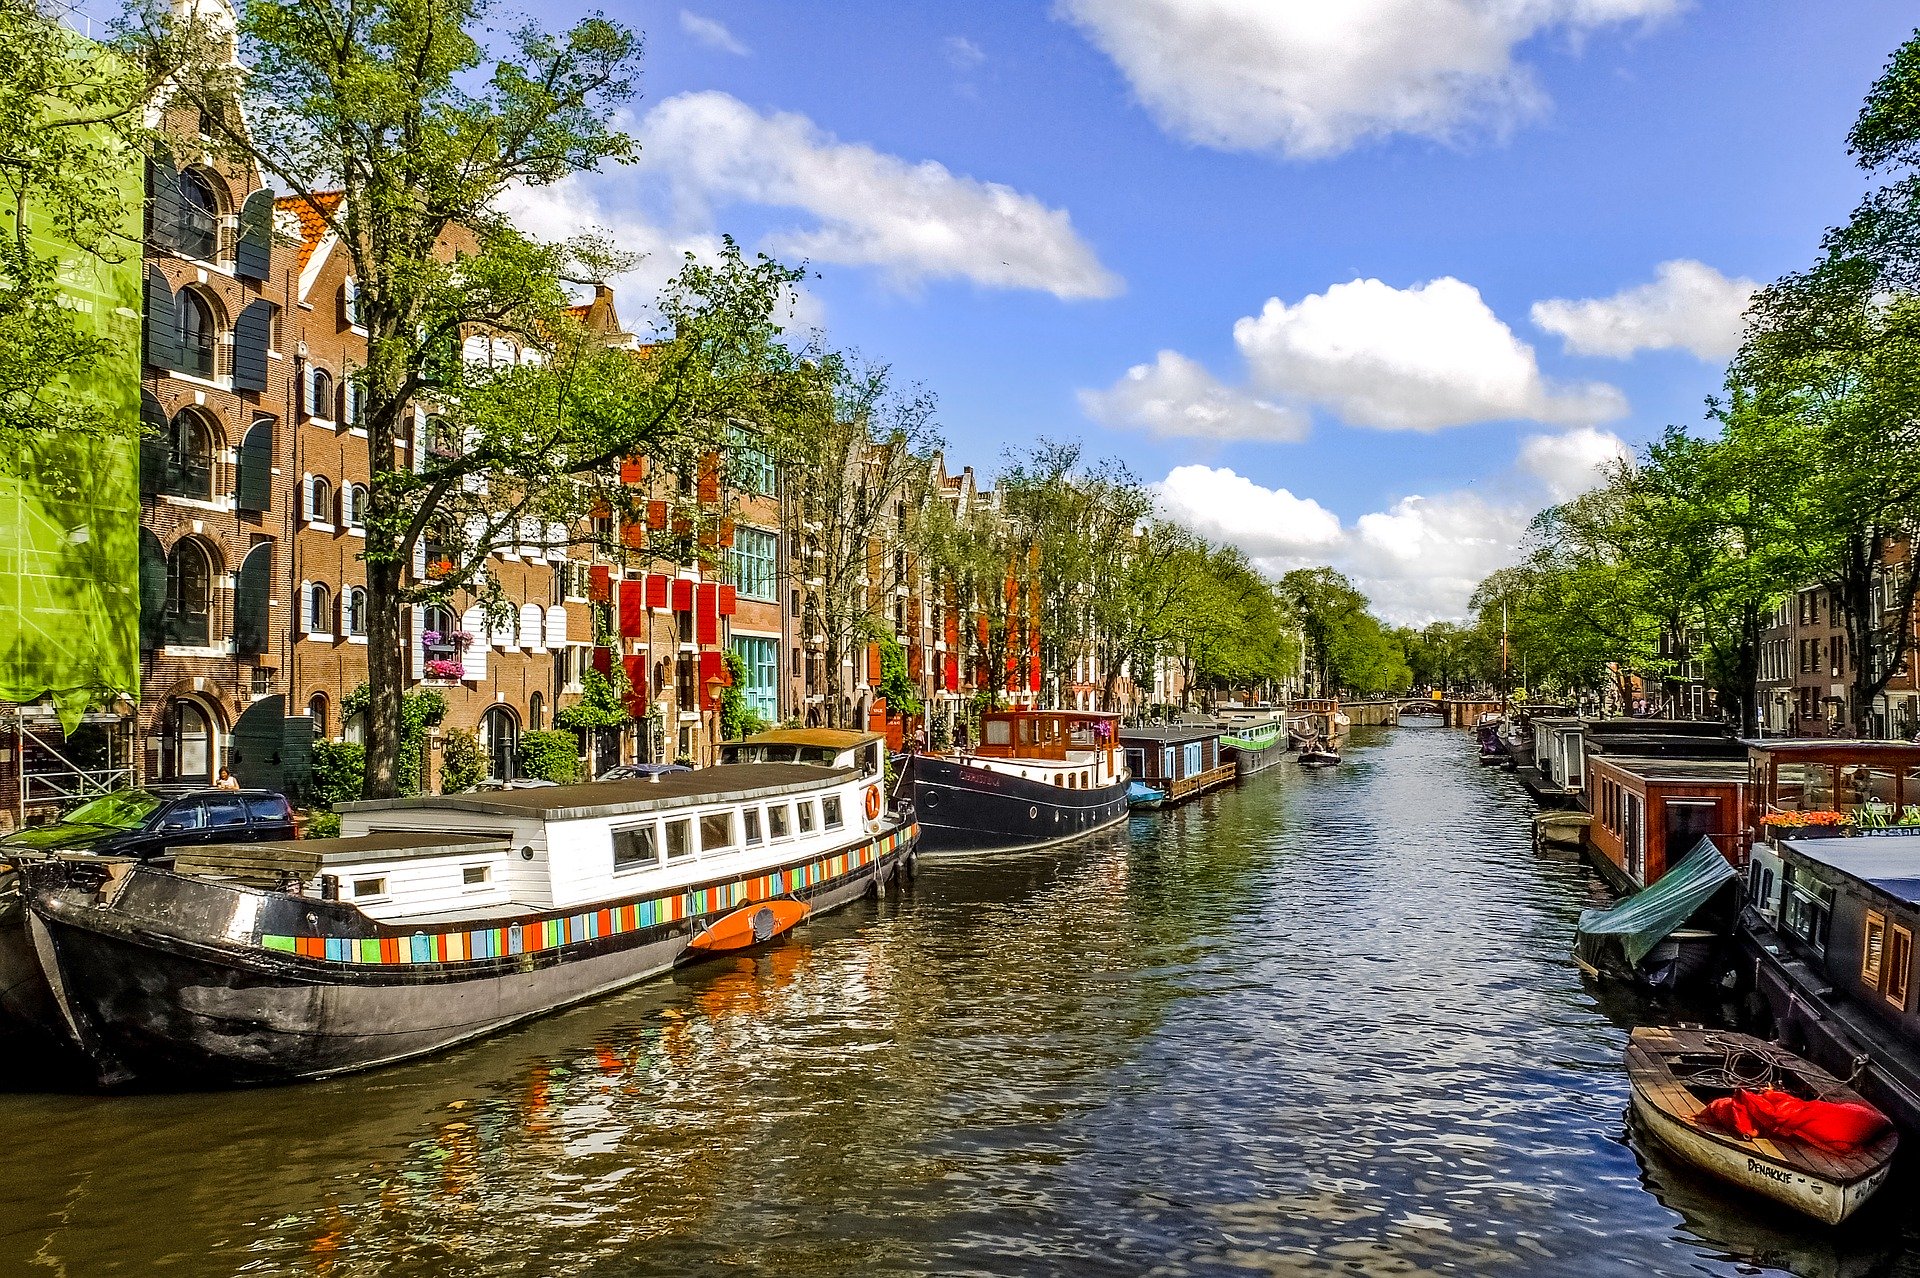 Huurplafond bereikt in meer dan 20 Nederlandse steden